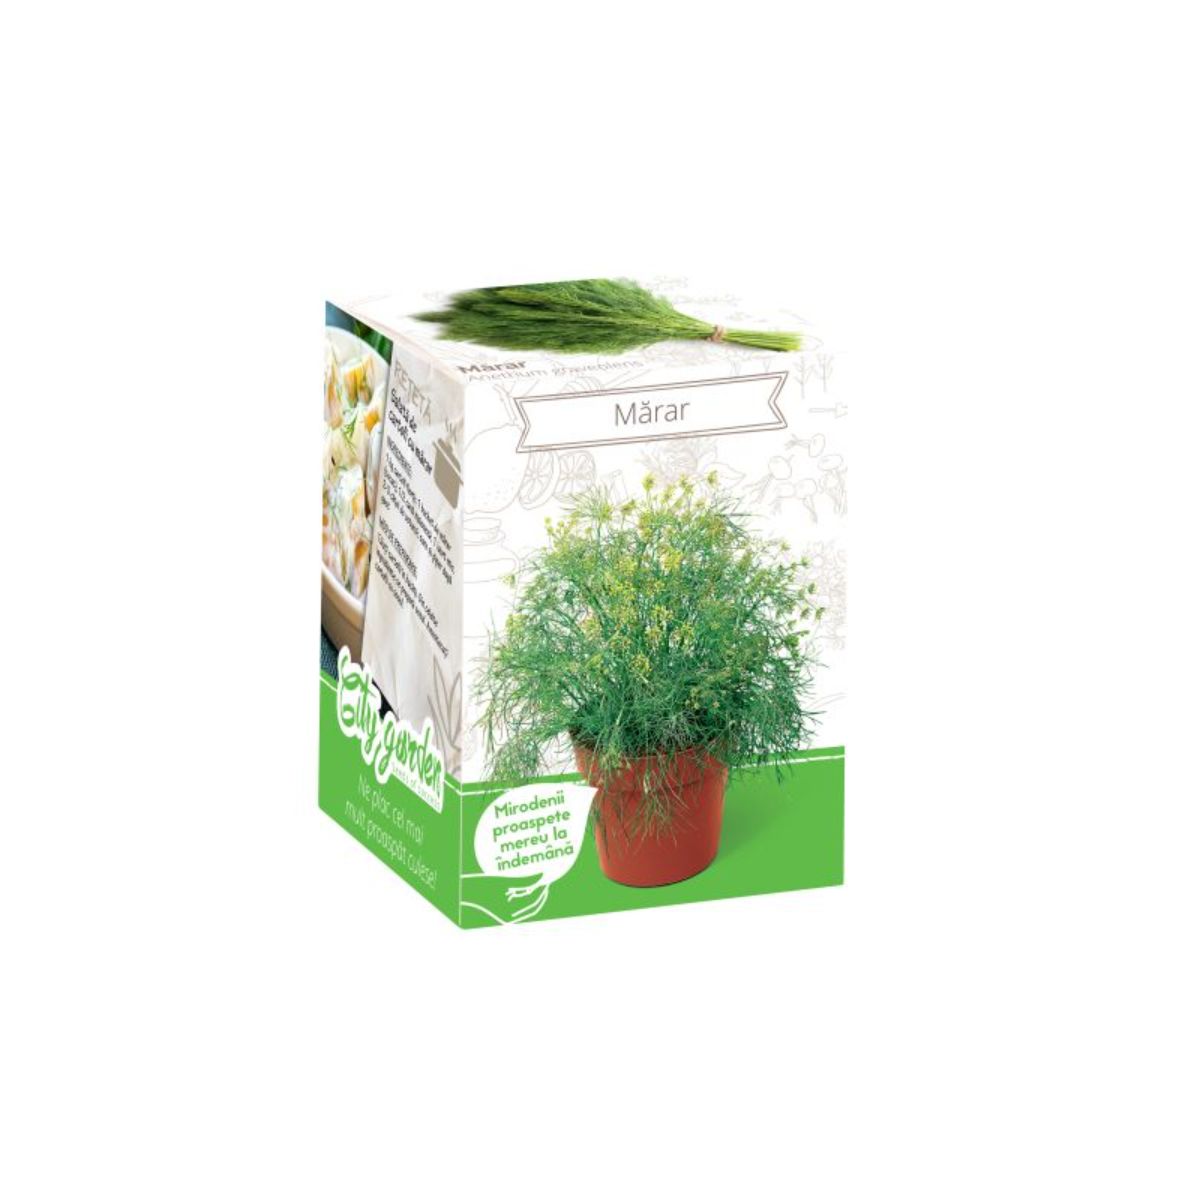 Seminte plante aromatice - Kit Plante Aromatice Marar, hectarul.ro